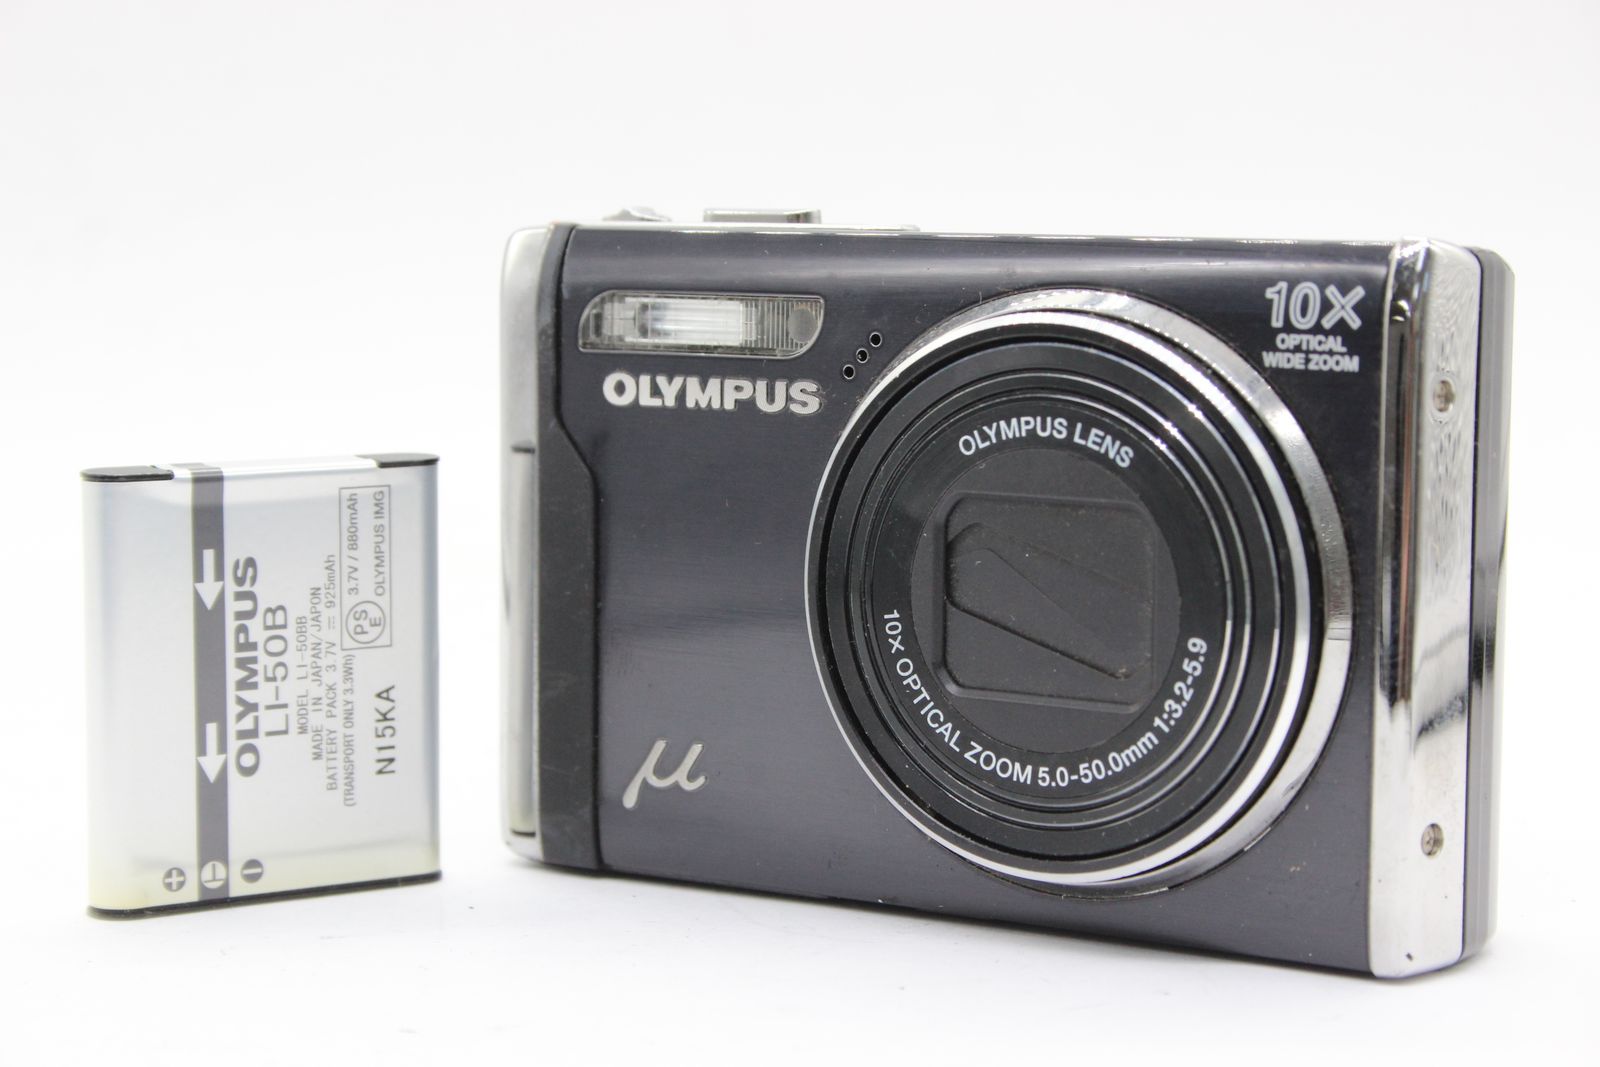 【返品保証】 オリンパス Olympus μ-9000 ブラック 10x バッテリー付き コンパクトデジタルカメラ s2398